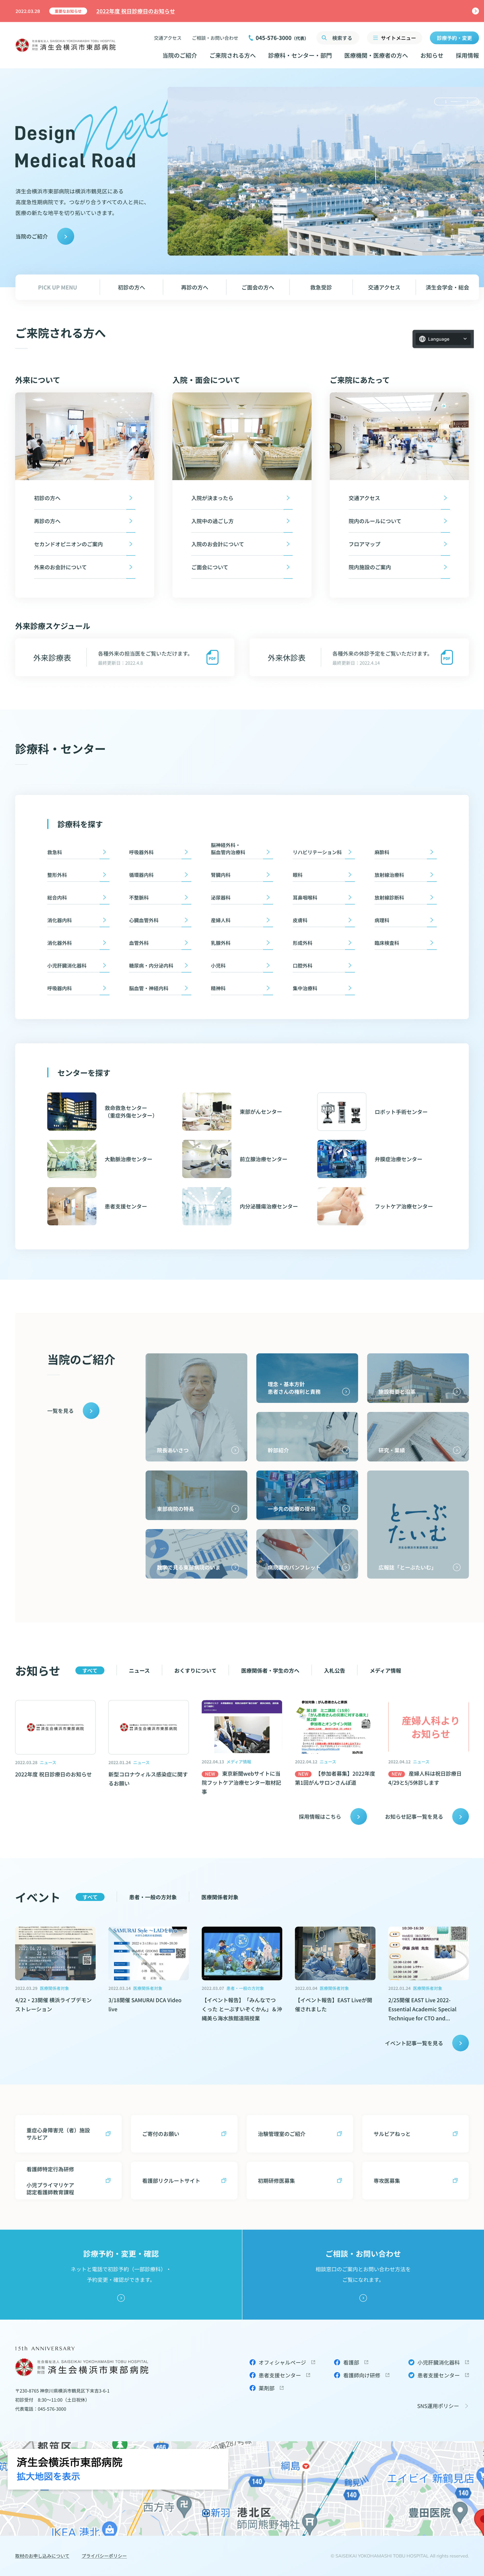 横滨市东部医院网站设计